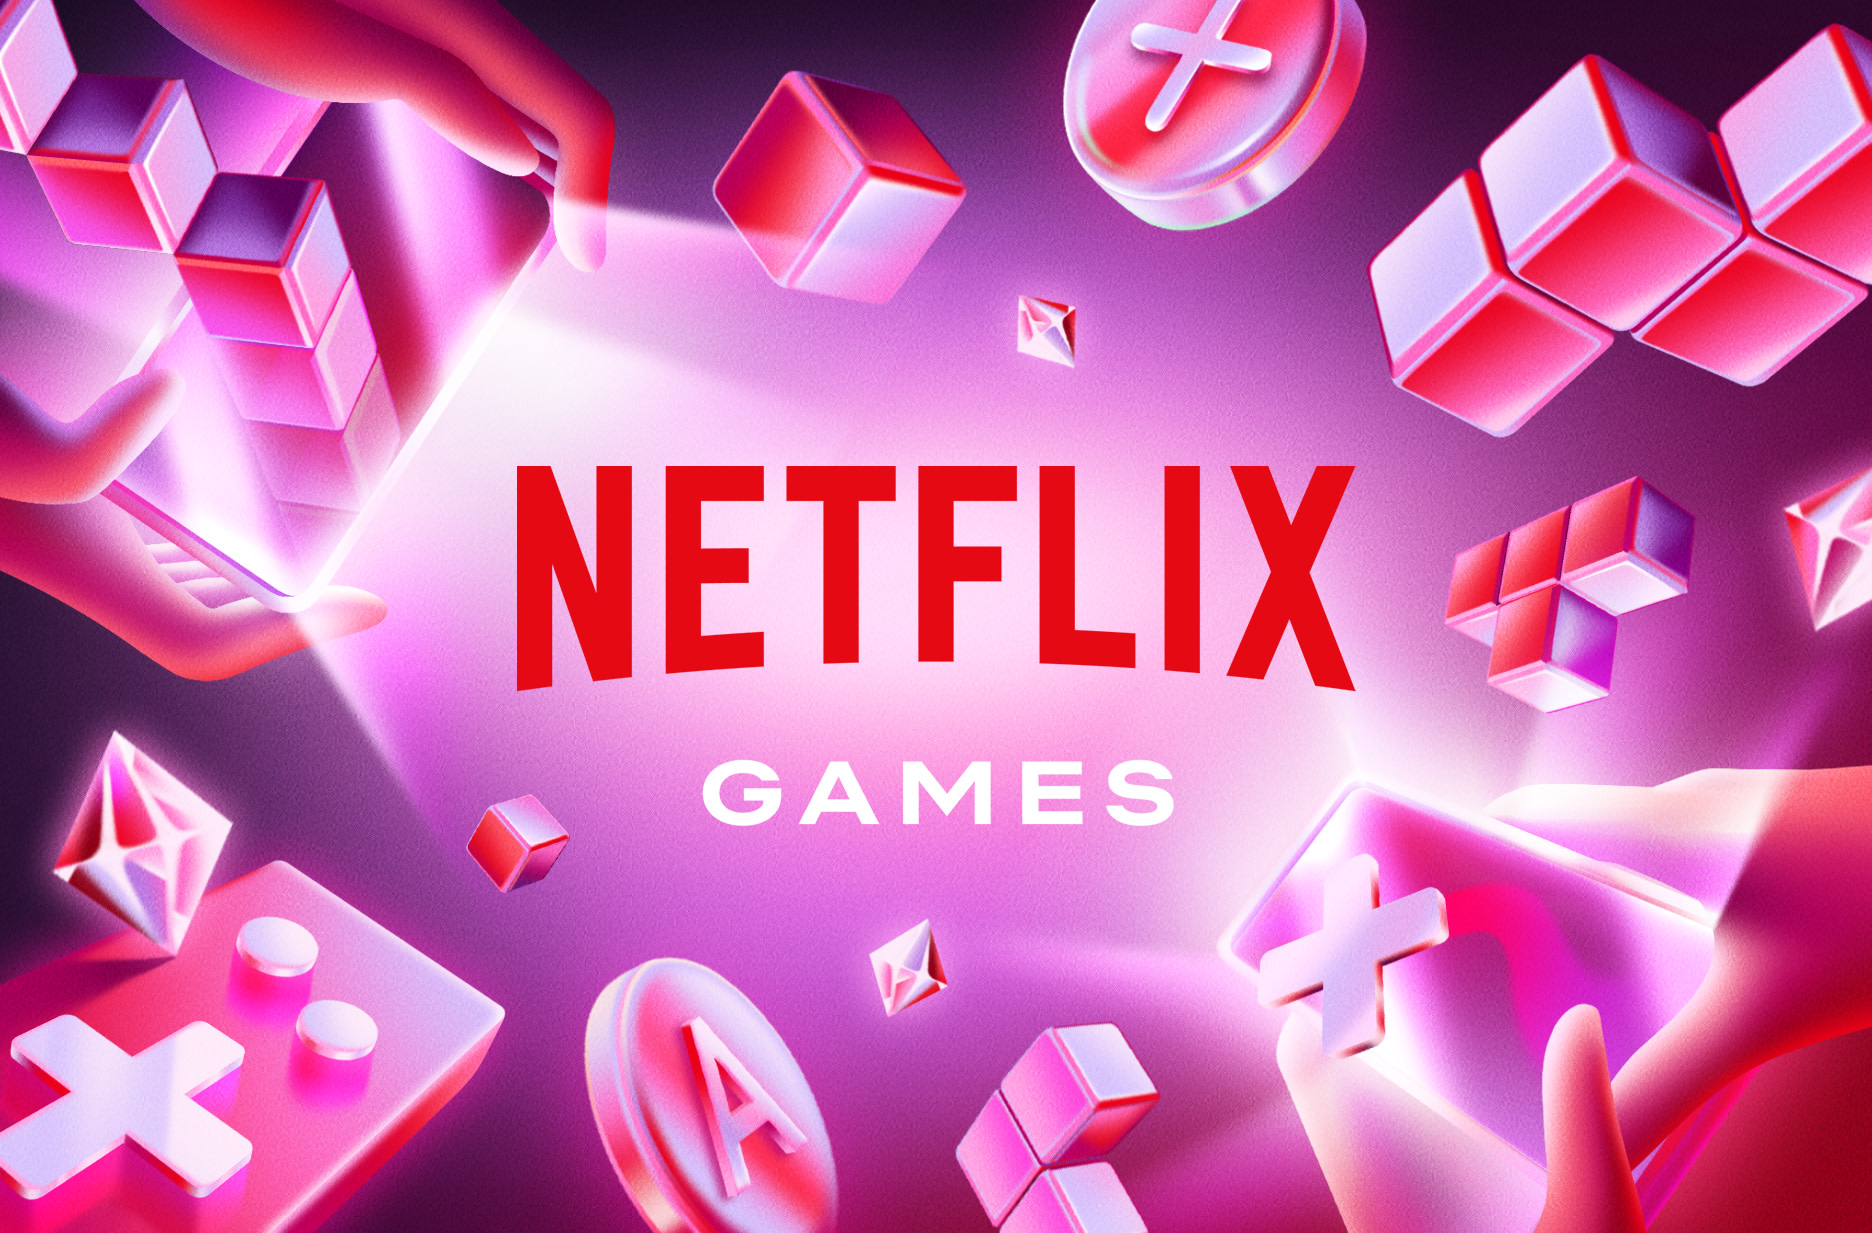 End Game  Netflix Media Center